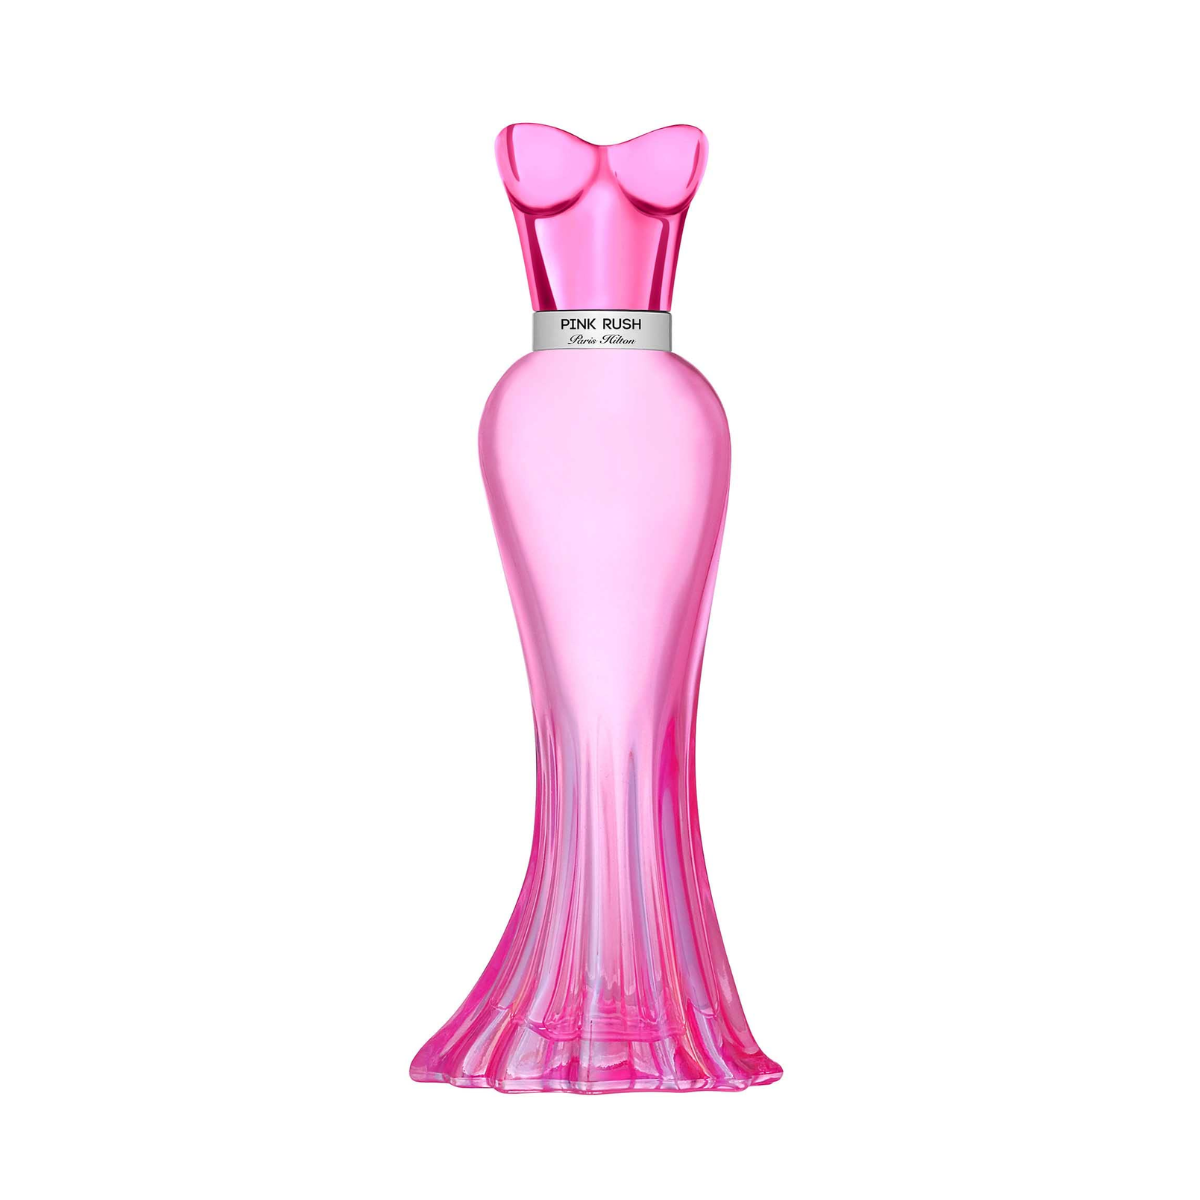 Paris Hilton Pink Rush Eau De Parfum